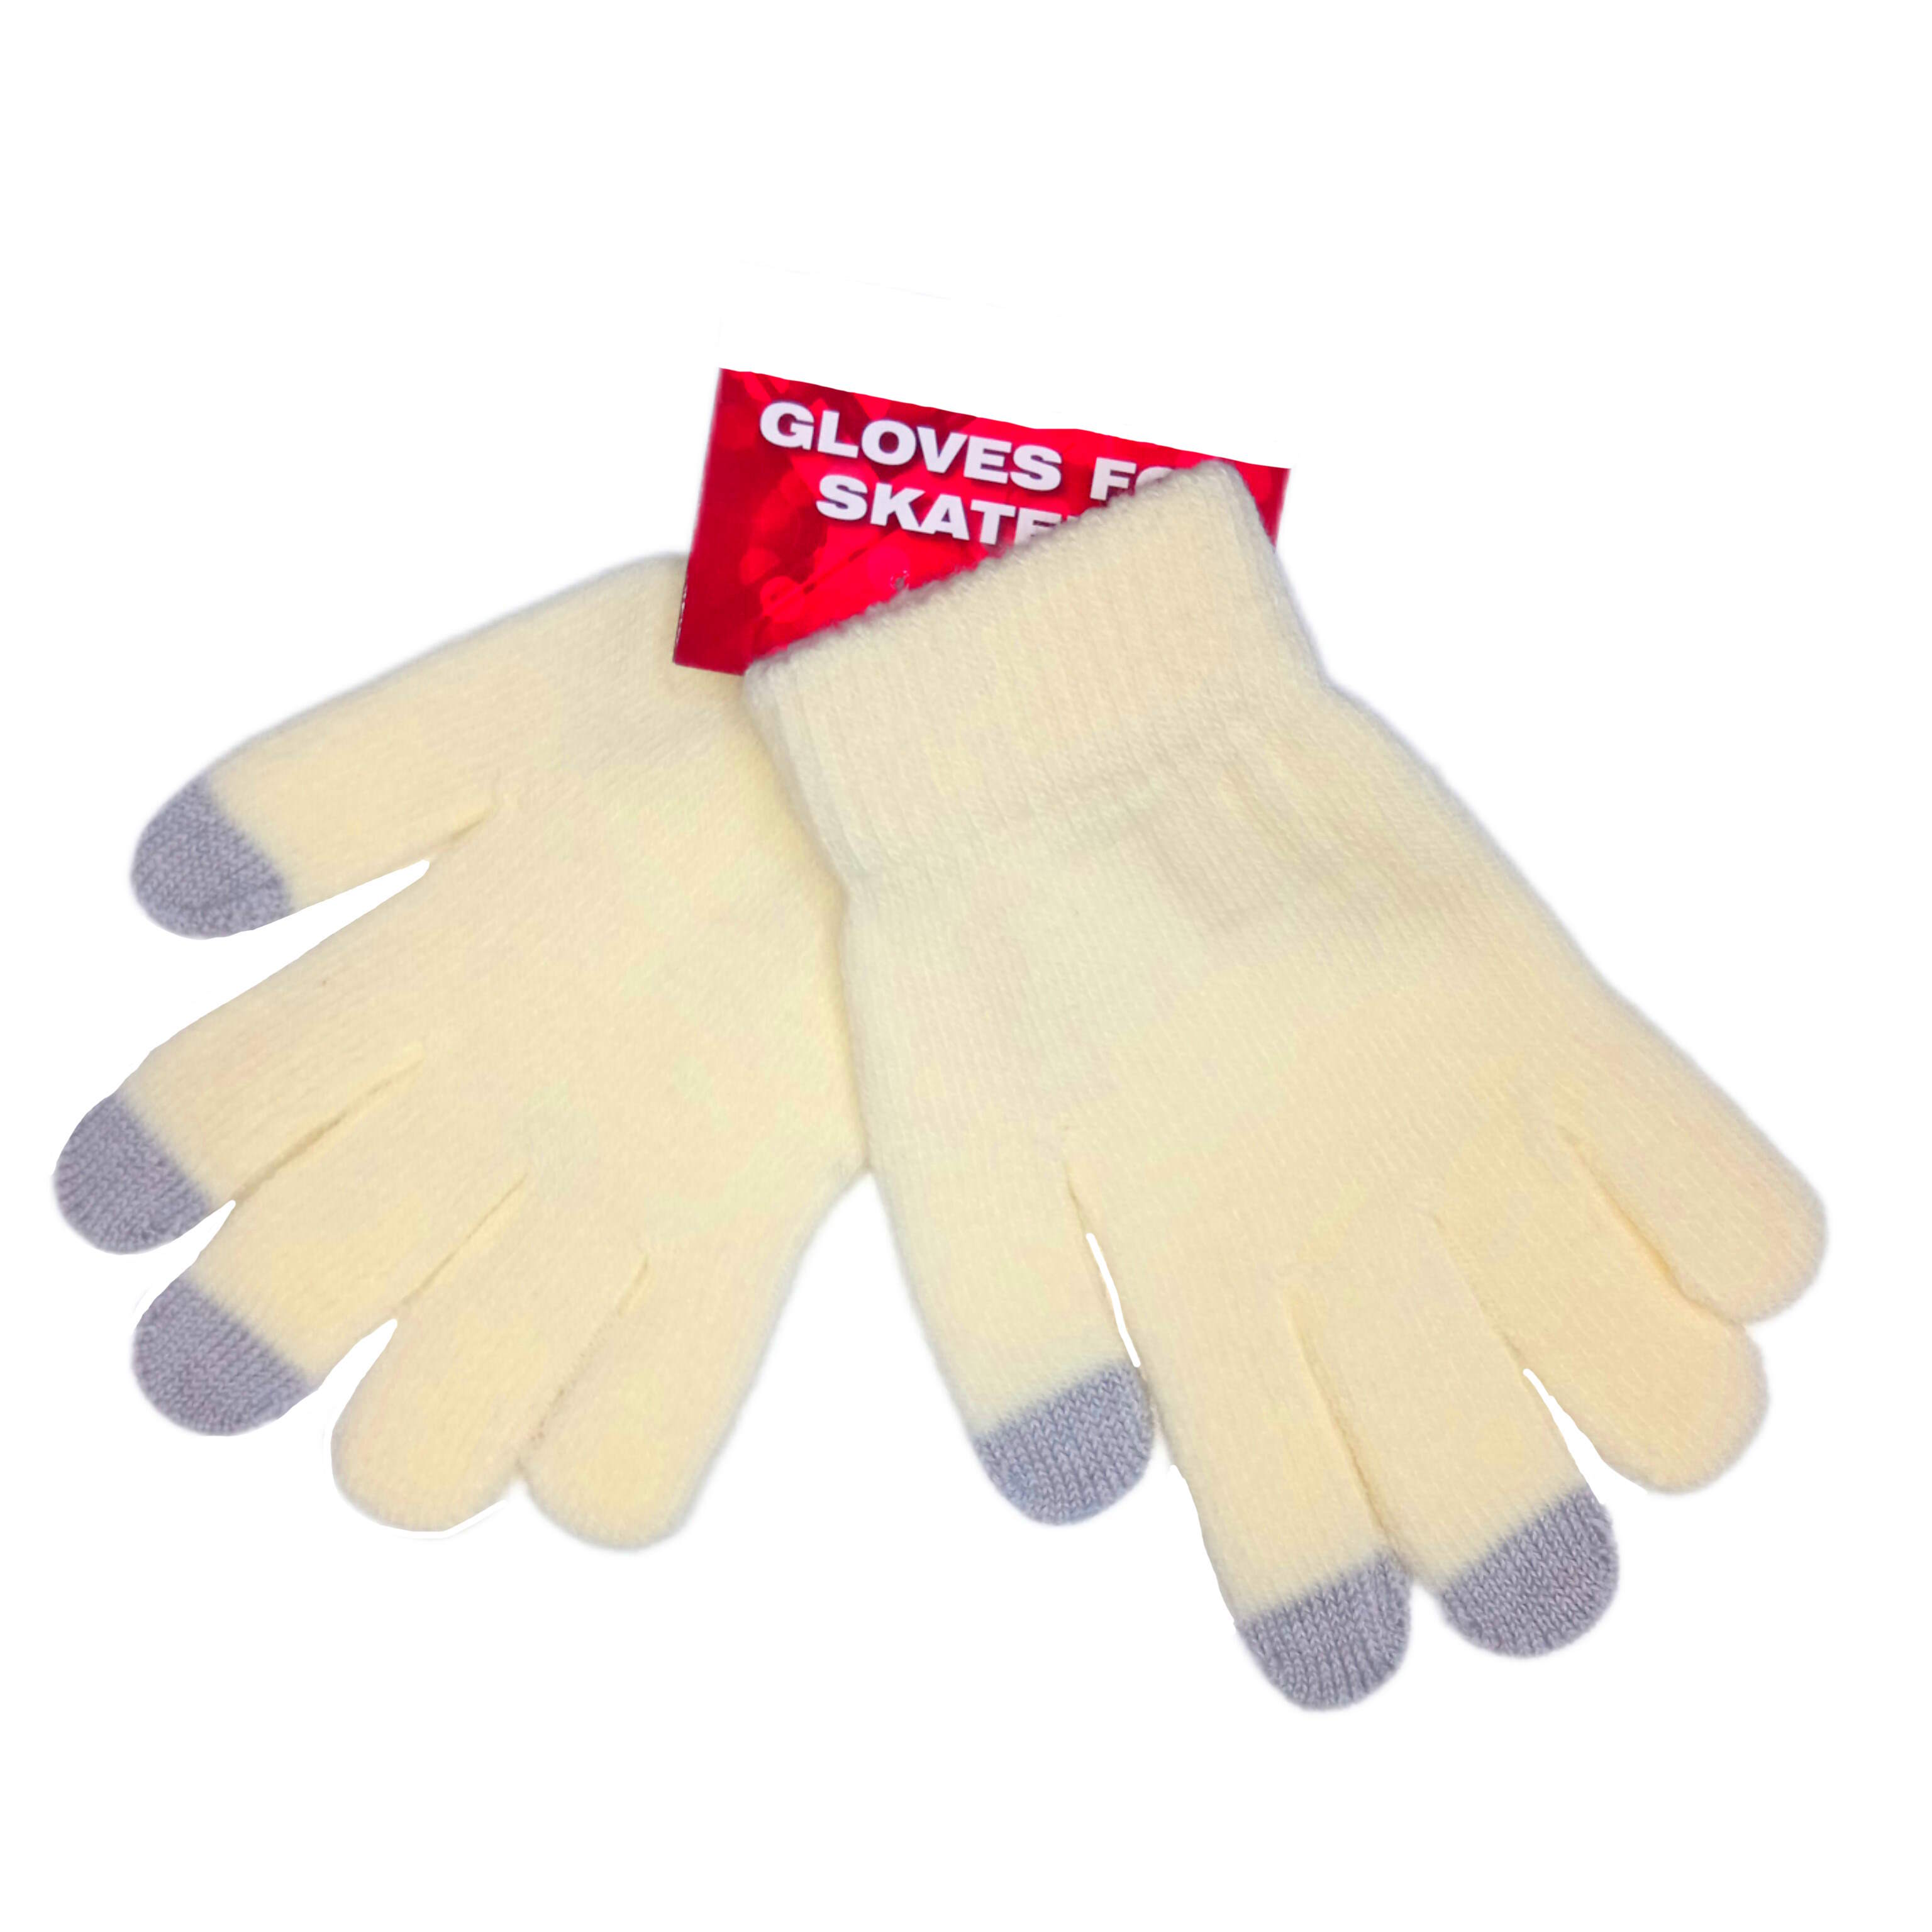 Вязаные желтые перчатки для фигуриста от интернет магазина ТДФК-ЮГ-ТВИЗЛ